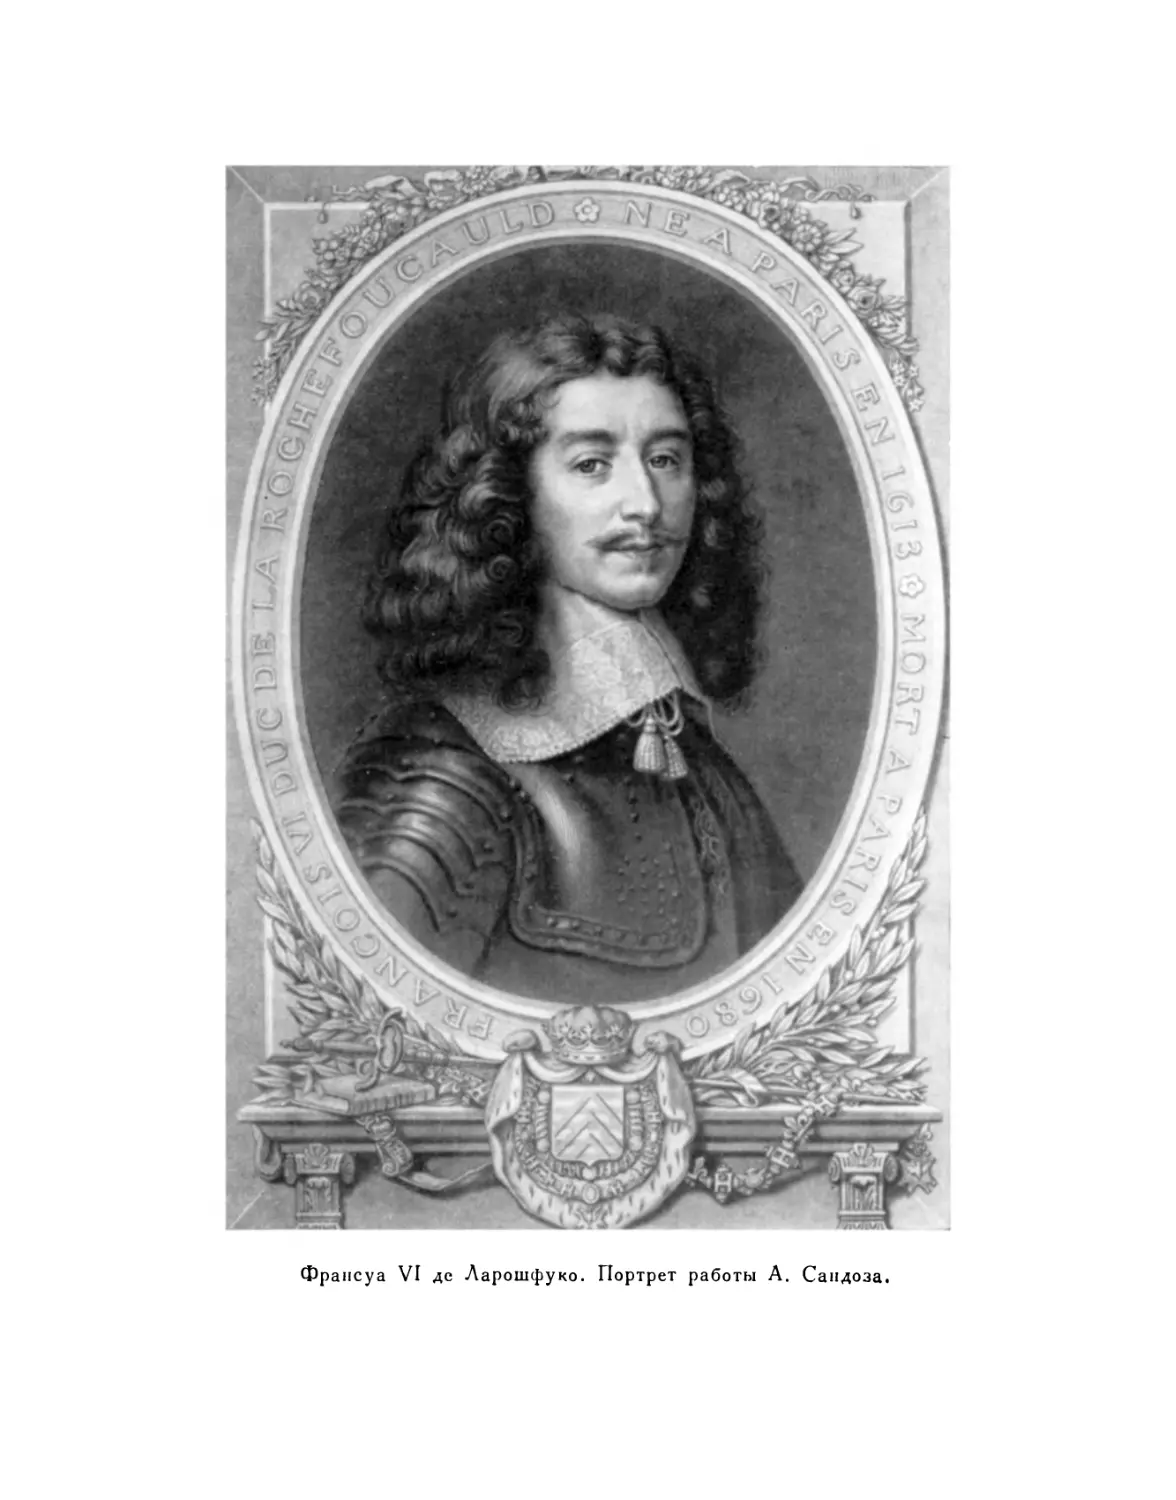 Вклейка. Франсуа VI, герцог де Ларошфуко. Портрет работы А. Сандоза